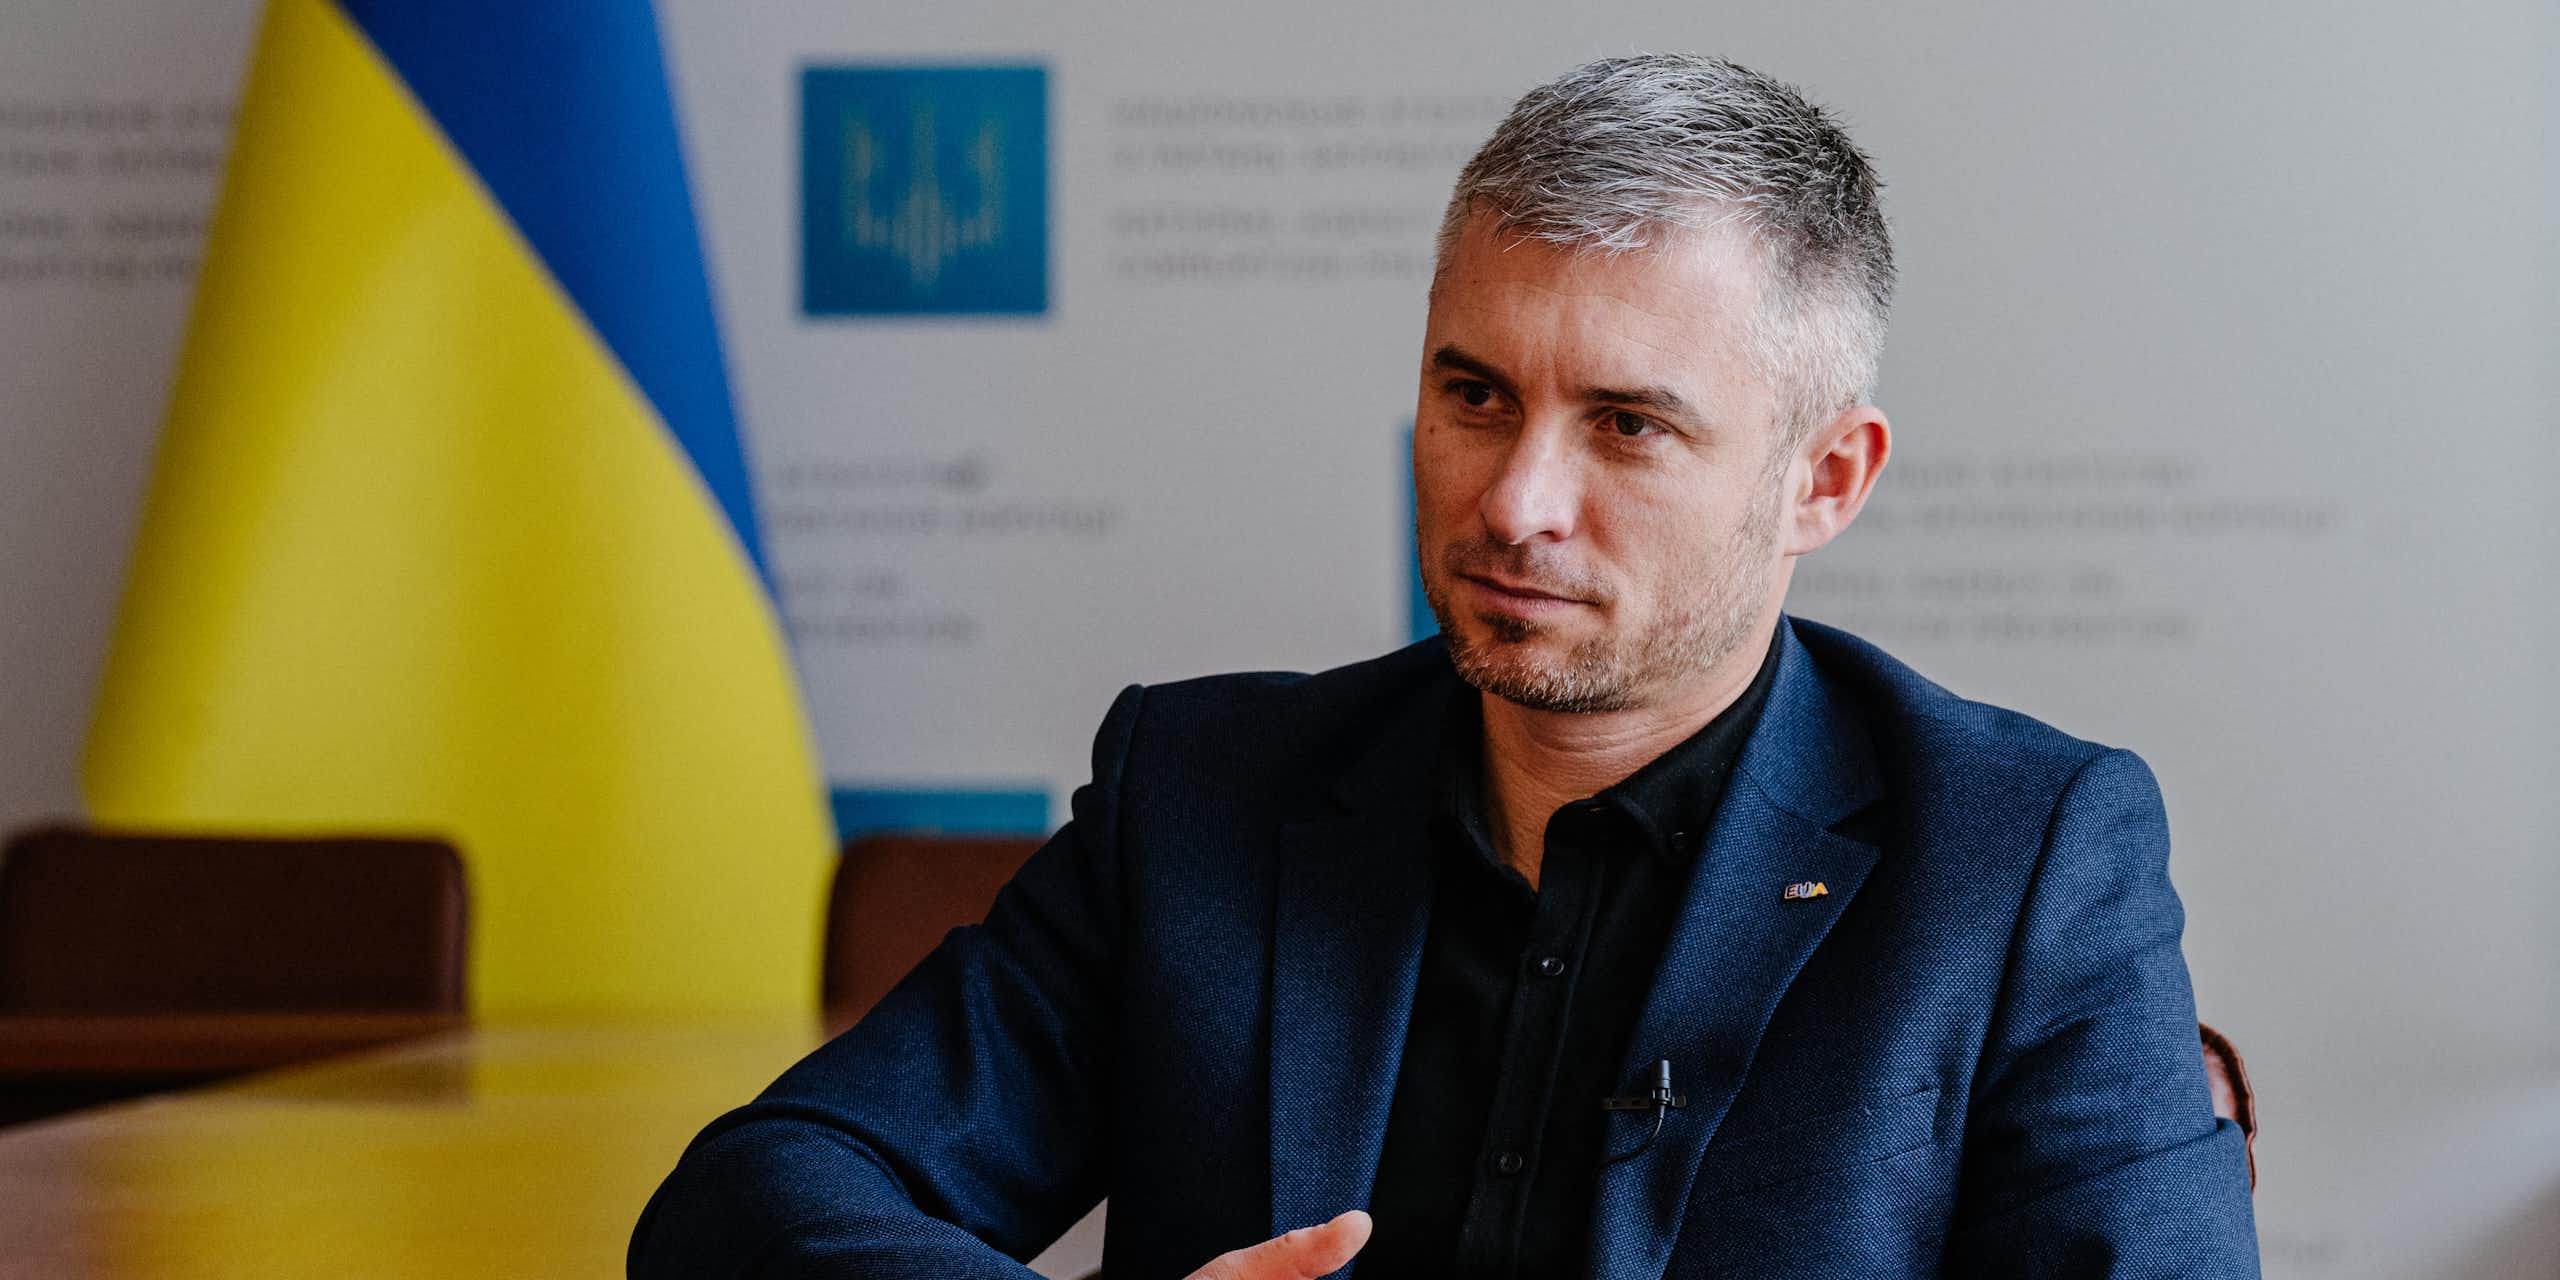 Un homme assis à un bureau, avec le drapeau ukrainien en arrière-fond